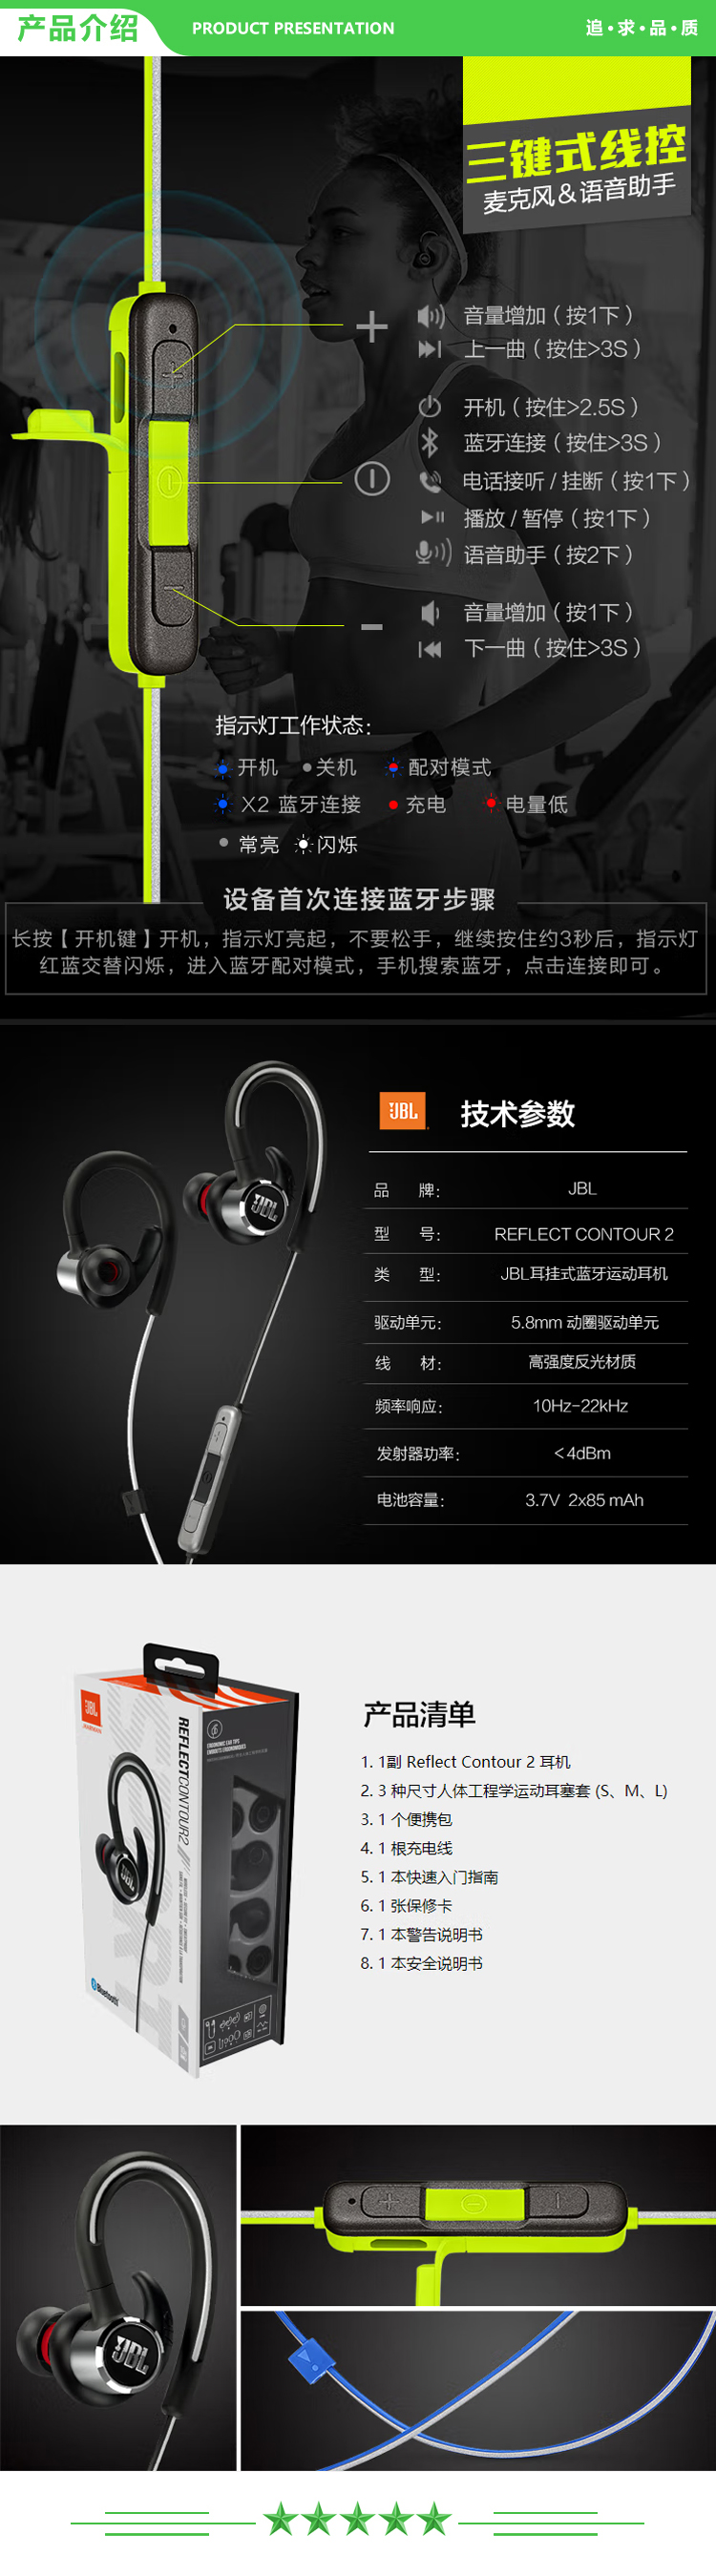 未标JBL Contour 2.0黑色 蓝牙耳机挂脖式 无线运动耳机 防水防汗 苹果华为小米安卓游戏通用耳机 .jpg